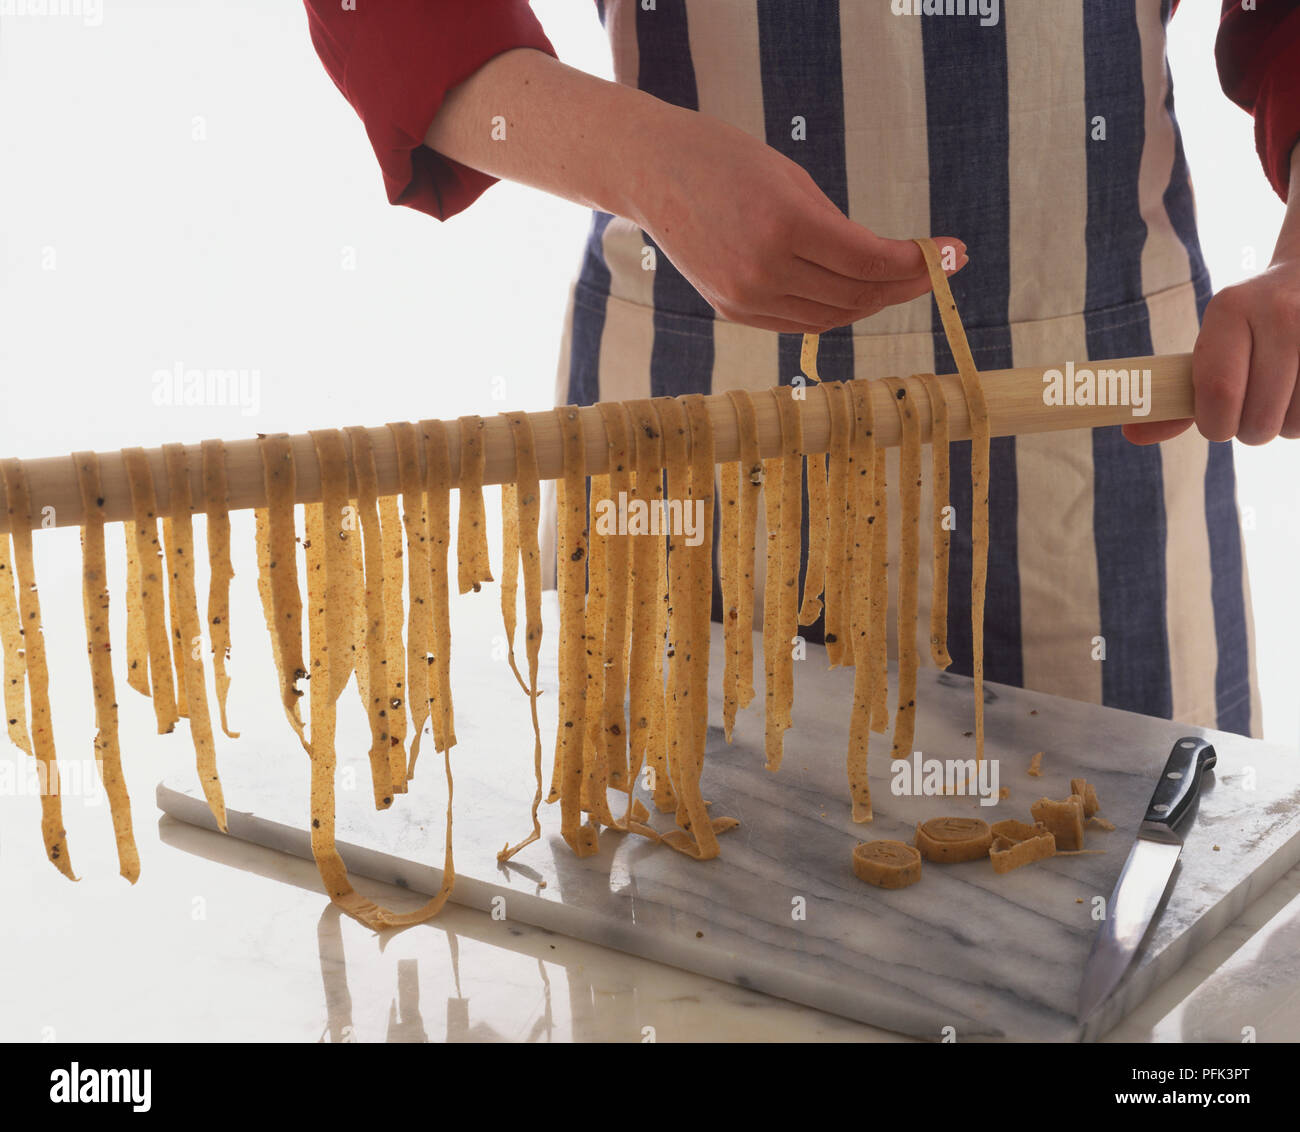 Heraus hängen pasta Streifen auf hölzernen Rampe zu trocknen. Stockfoto